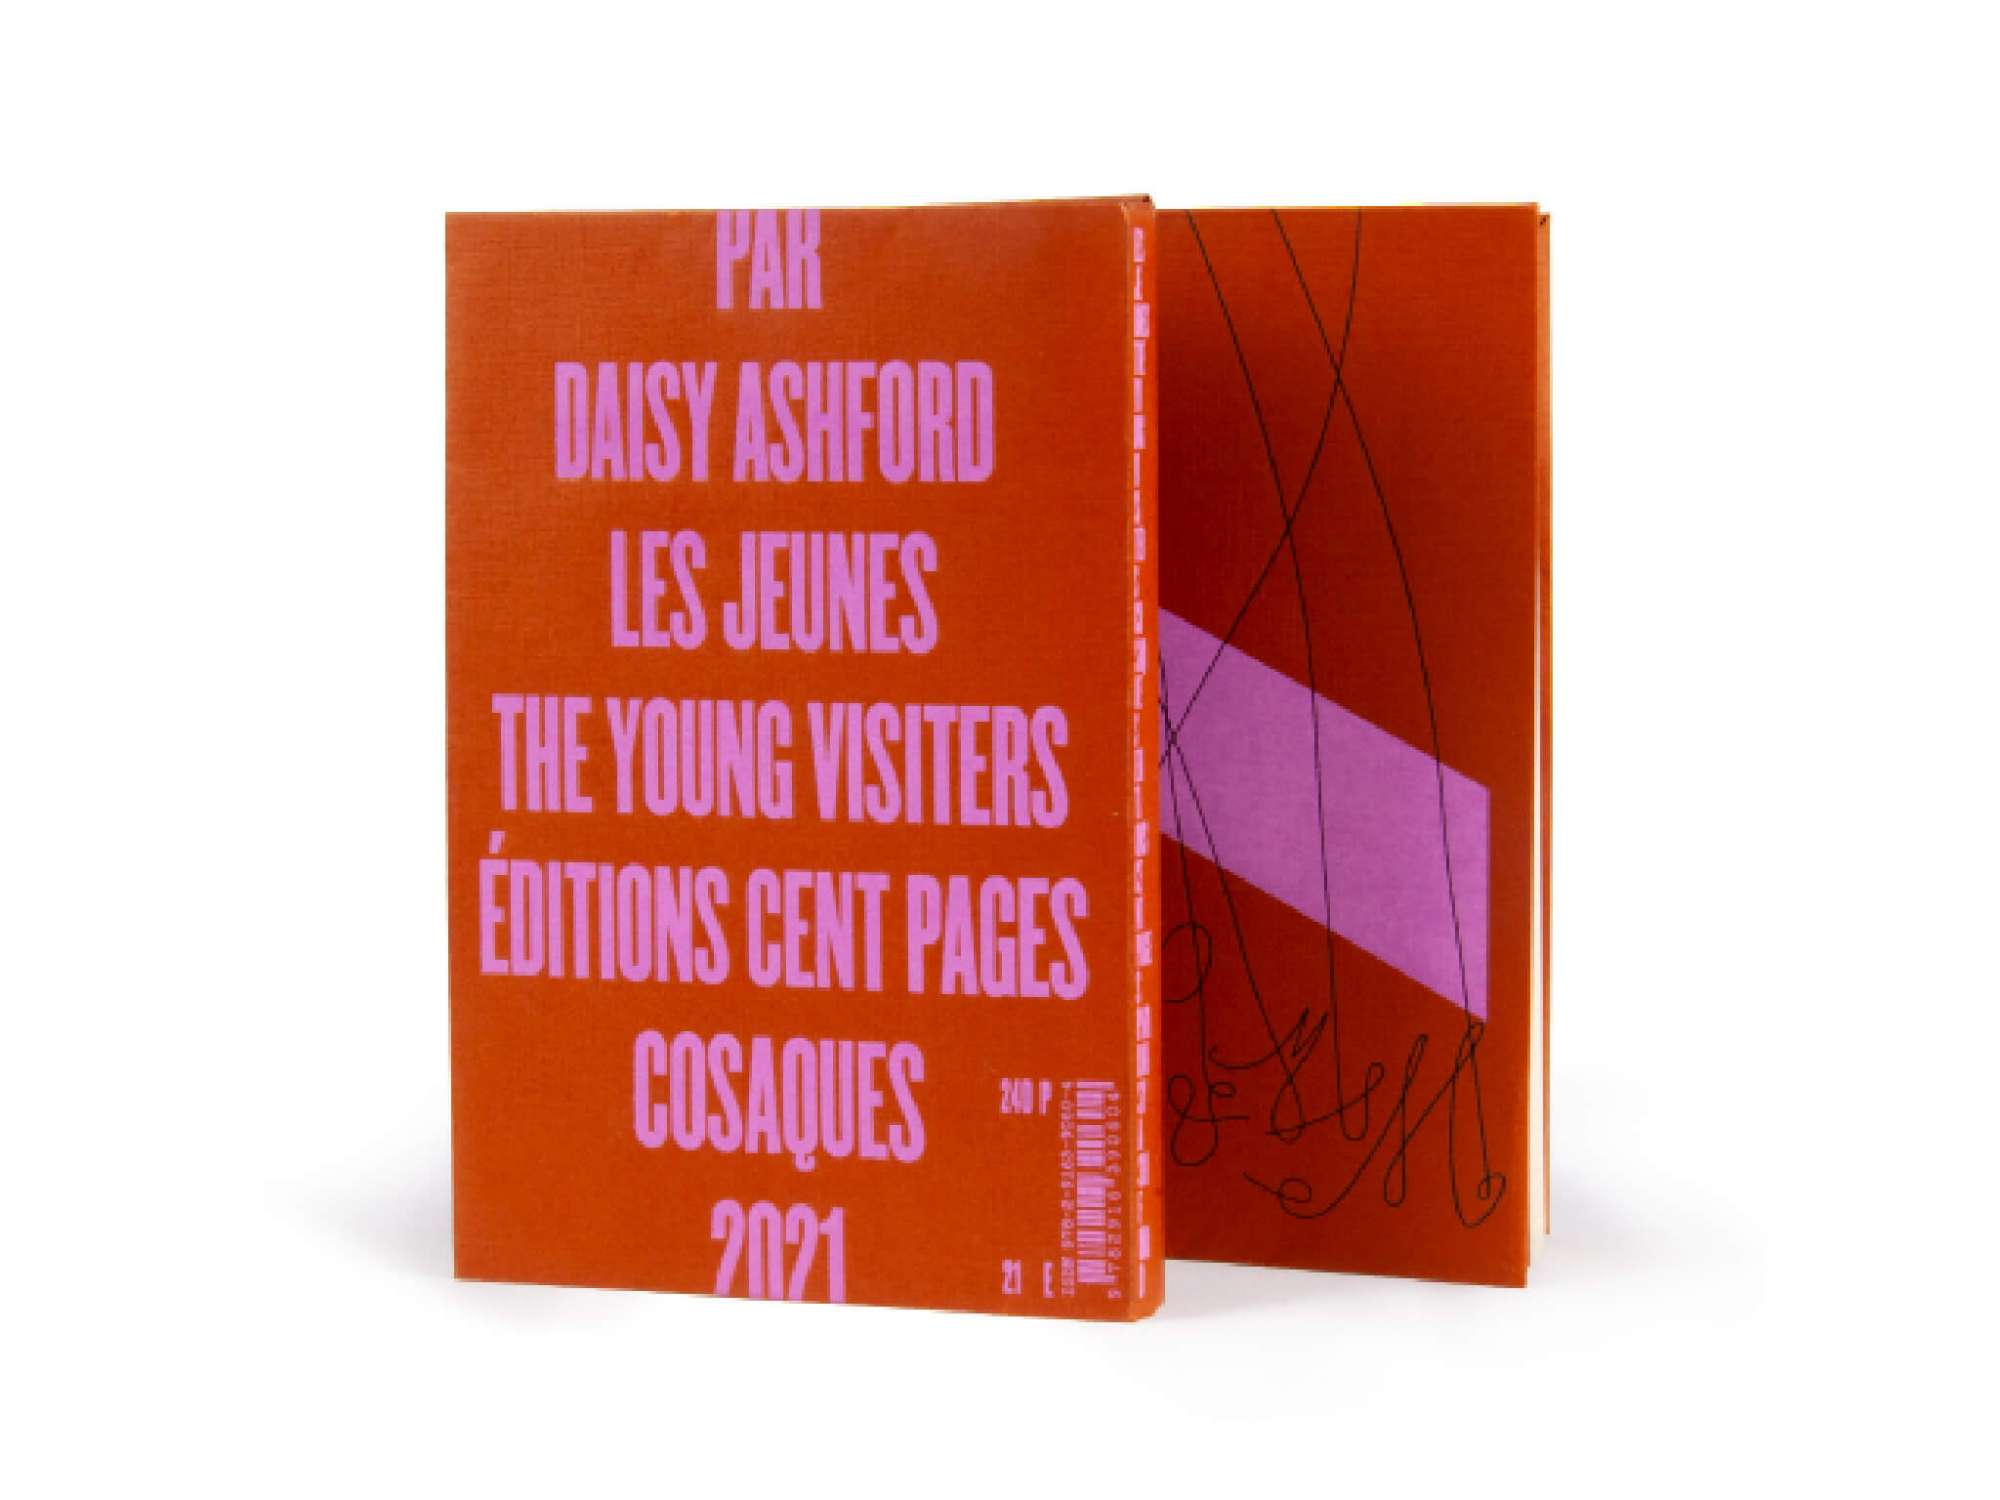 Daisy Ashford - Les jeunes visiteurs - Éditions cent pages - J.-M. Barrie - Collection Cosaques